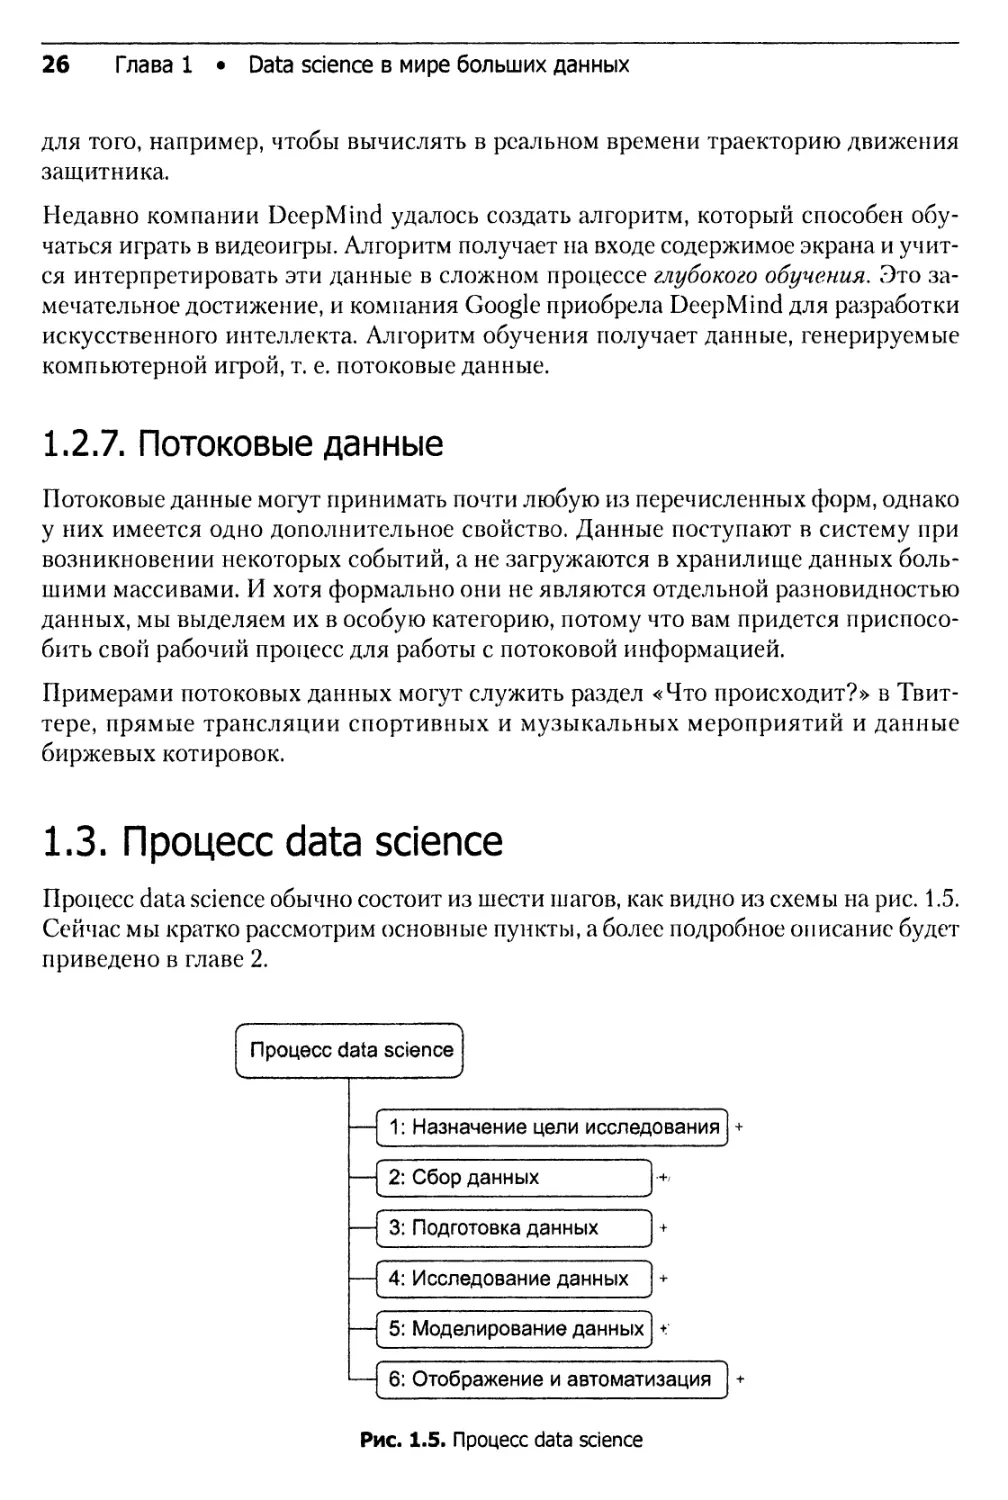 1.3. Процесс data science